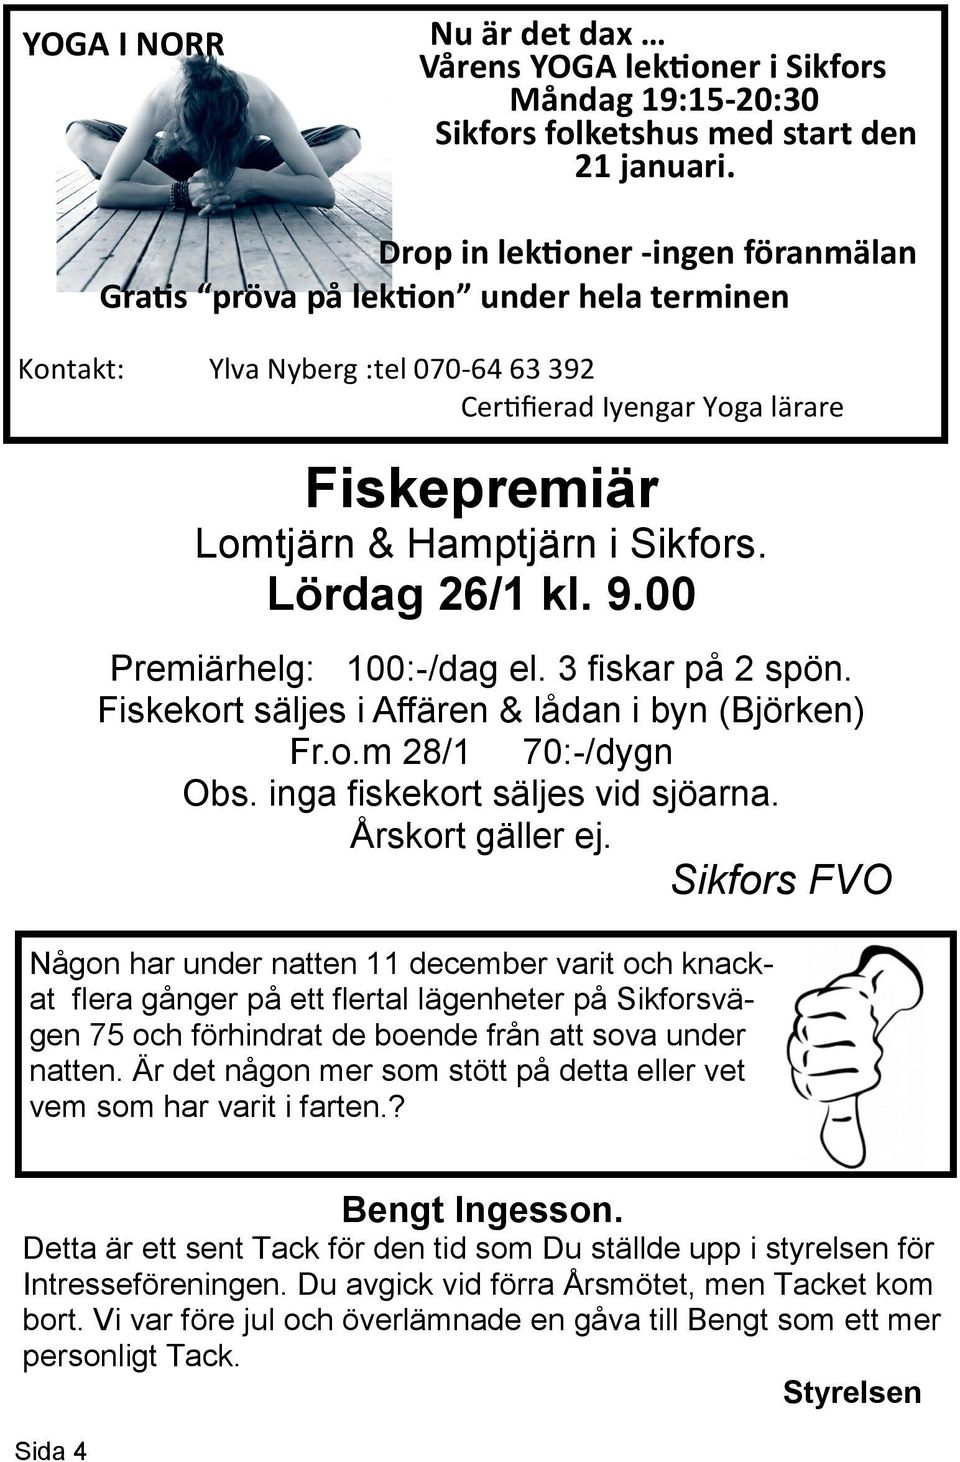 Lördag 26/1 kl. 9.00 Premiärhelg: 100:-/dag el. 3 fiskar på 2 spön. Fiskekort säljes i Affären & lådan i byn (Björken) Fr.o.m 28/1 70:-/dygn Obs. inga fiskekort säljes vid sjöarna. Årskort gäller ej.